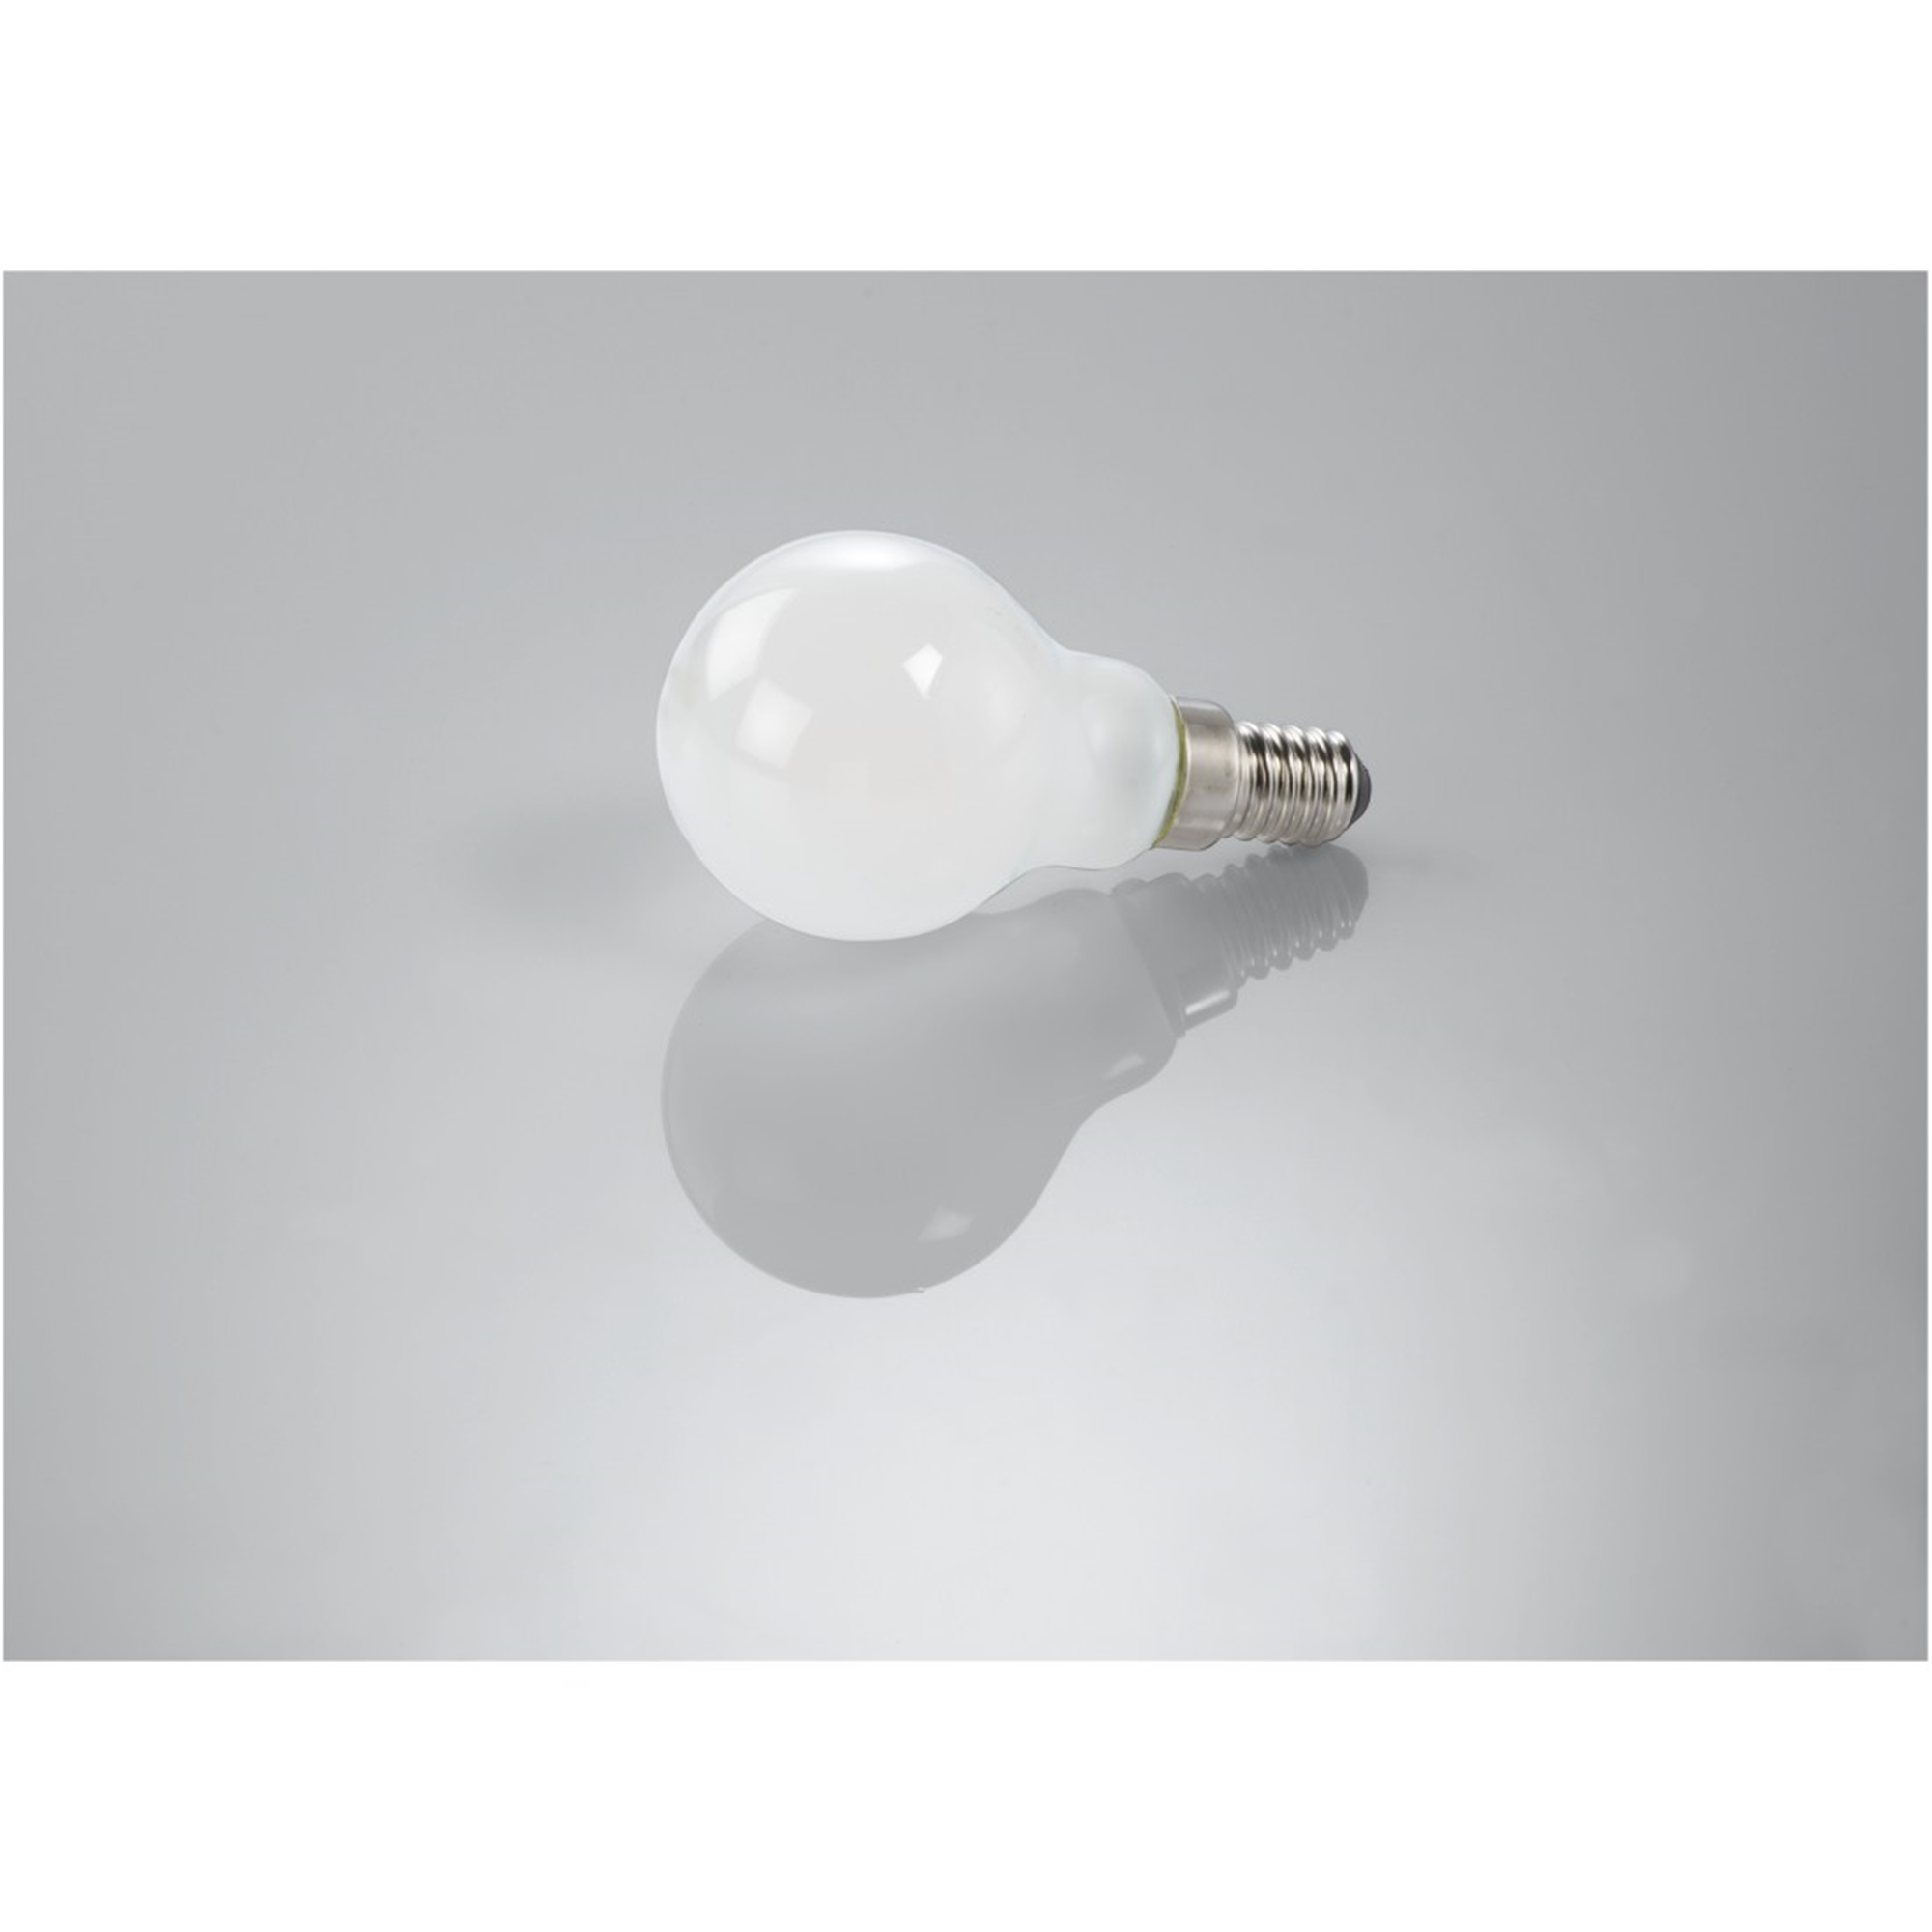 XAVAX E14, Warmweiß ersetzt 470lm E14 LED-Lampe 40W